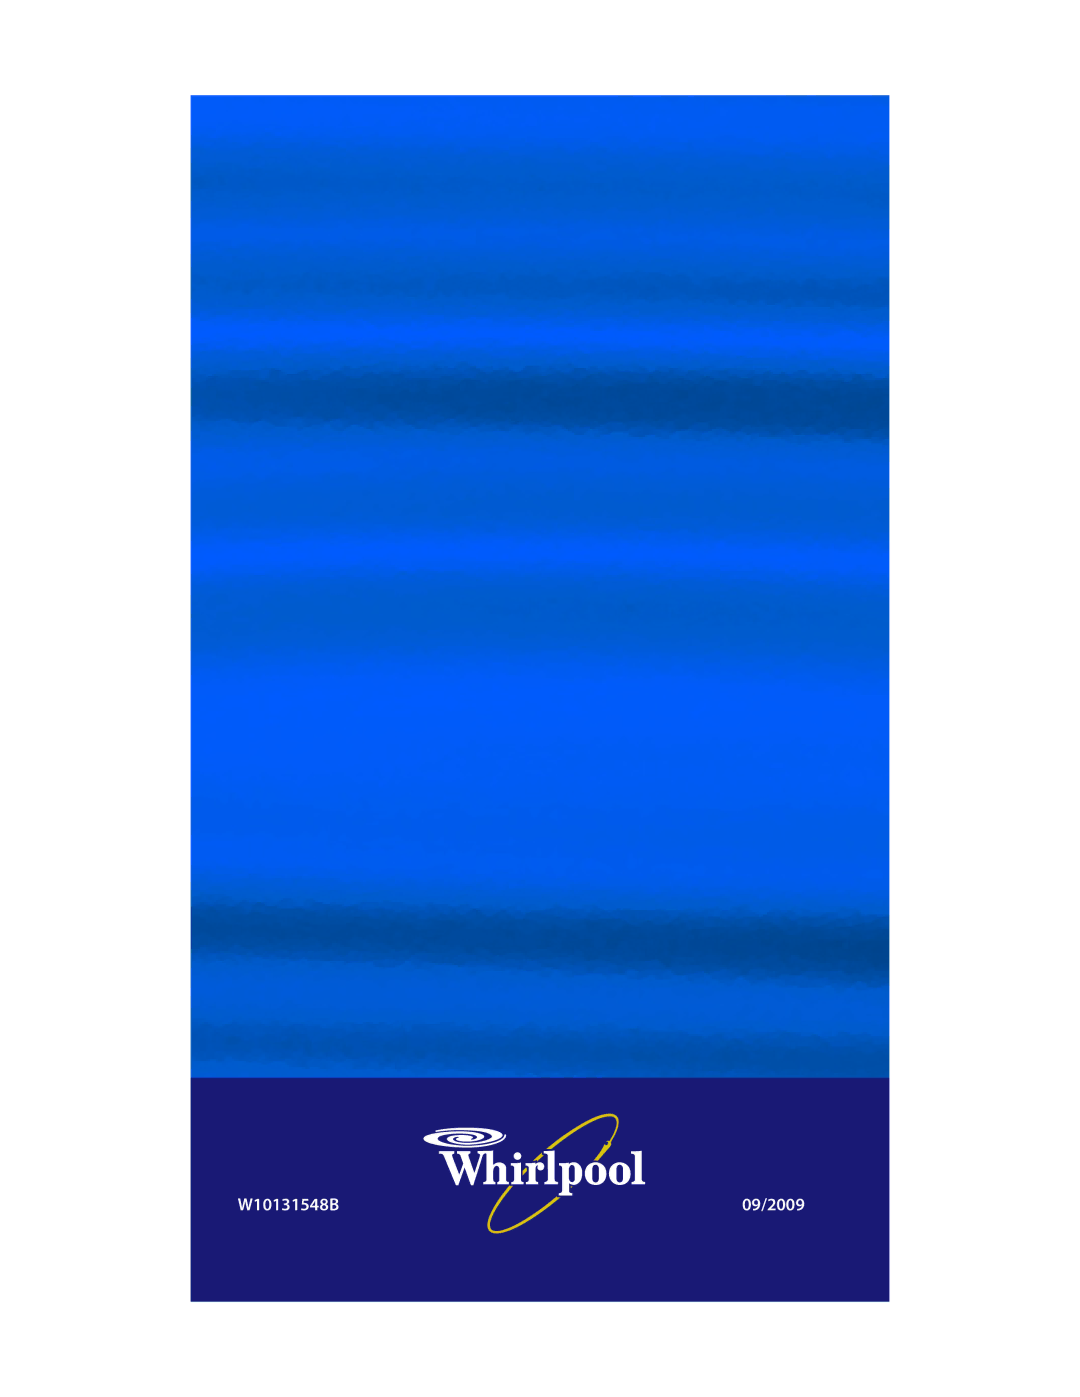 Whirlpool manual W10131548B 09/2009 